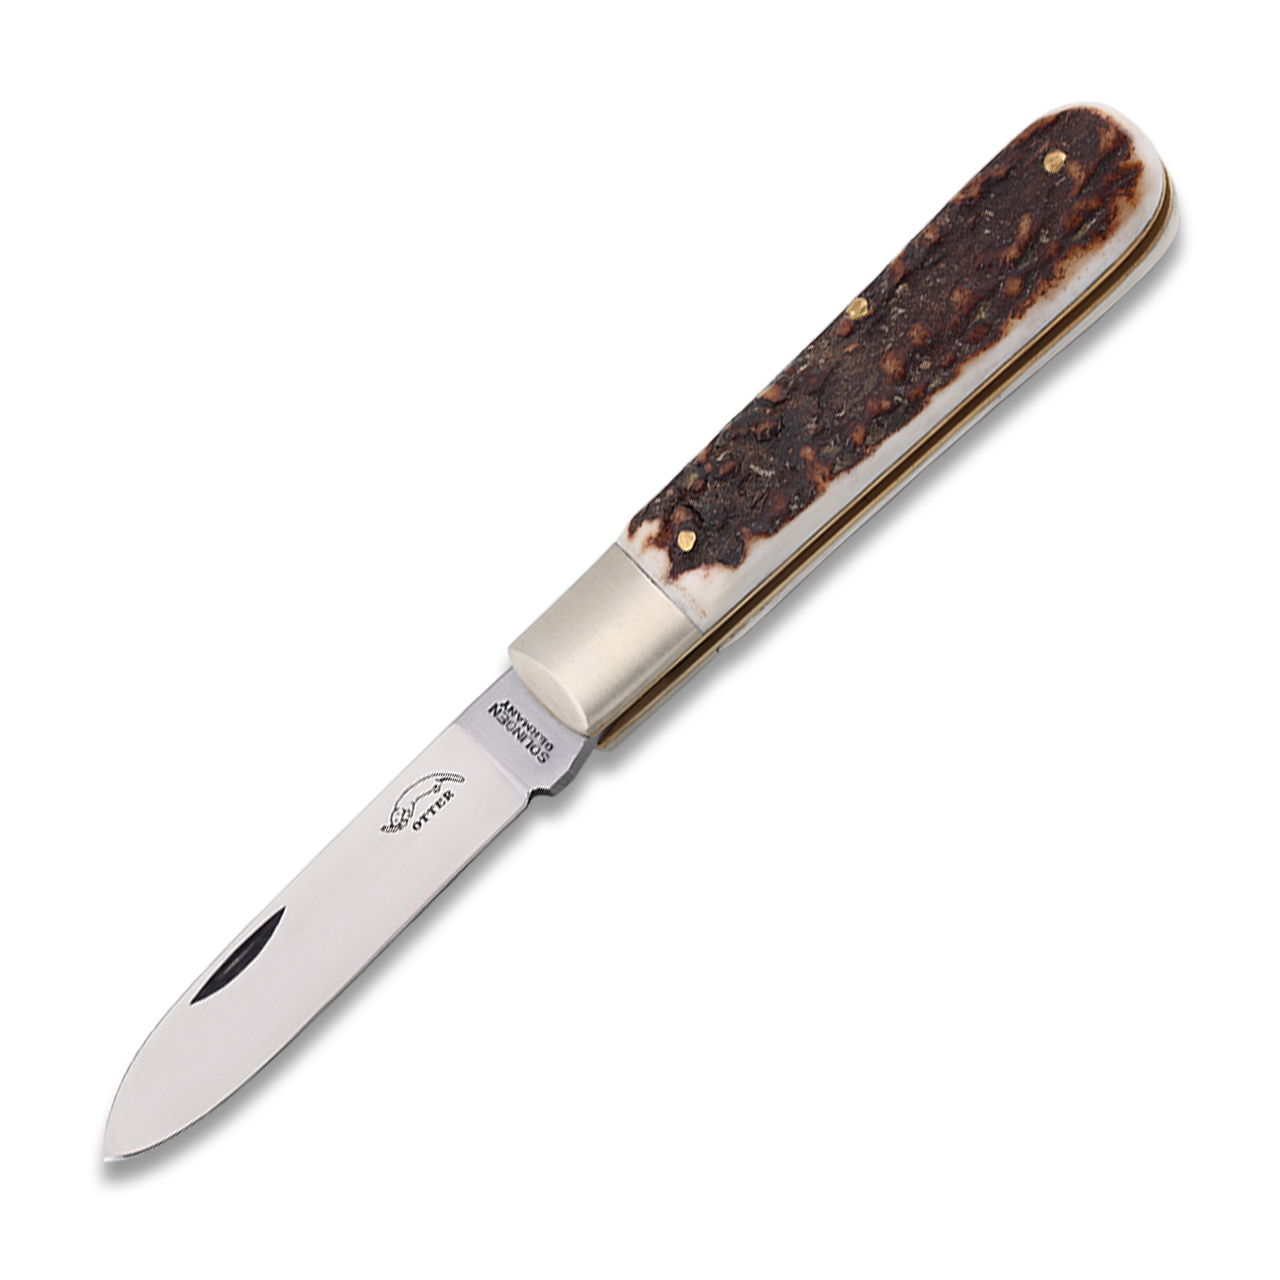 OTTER Pocket knife 166 buckhorn